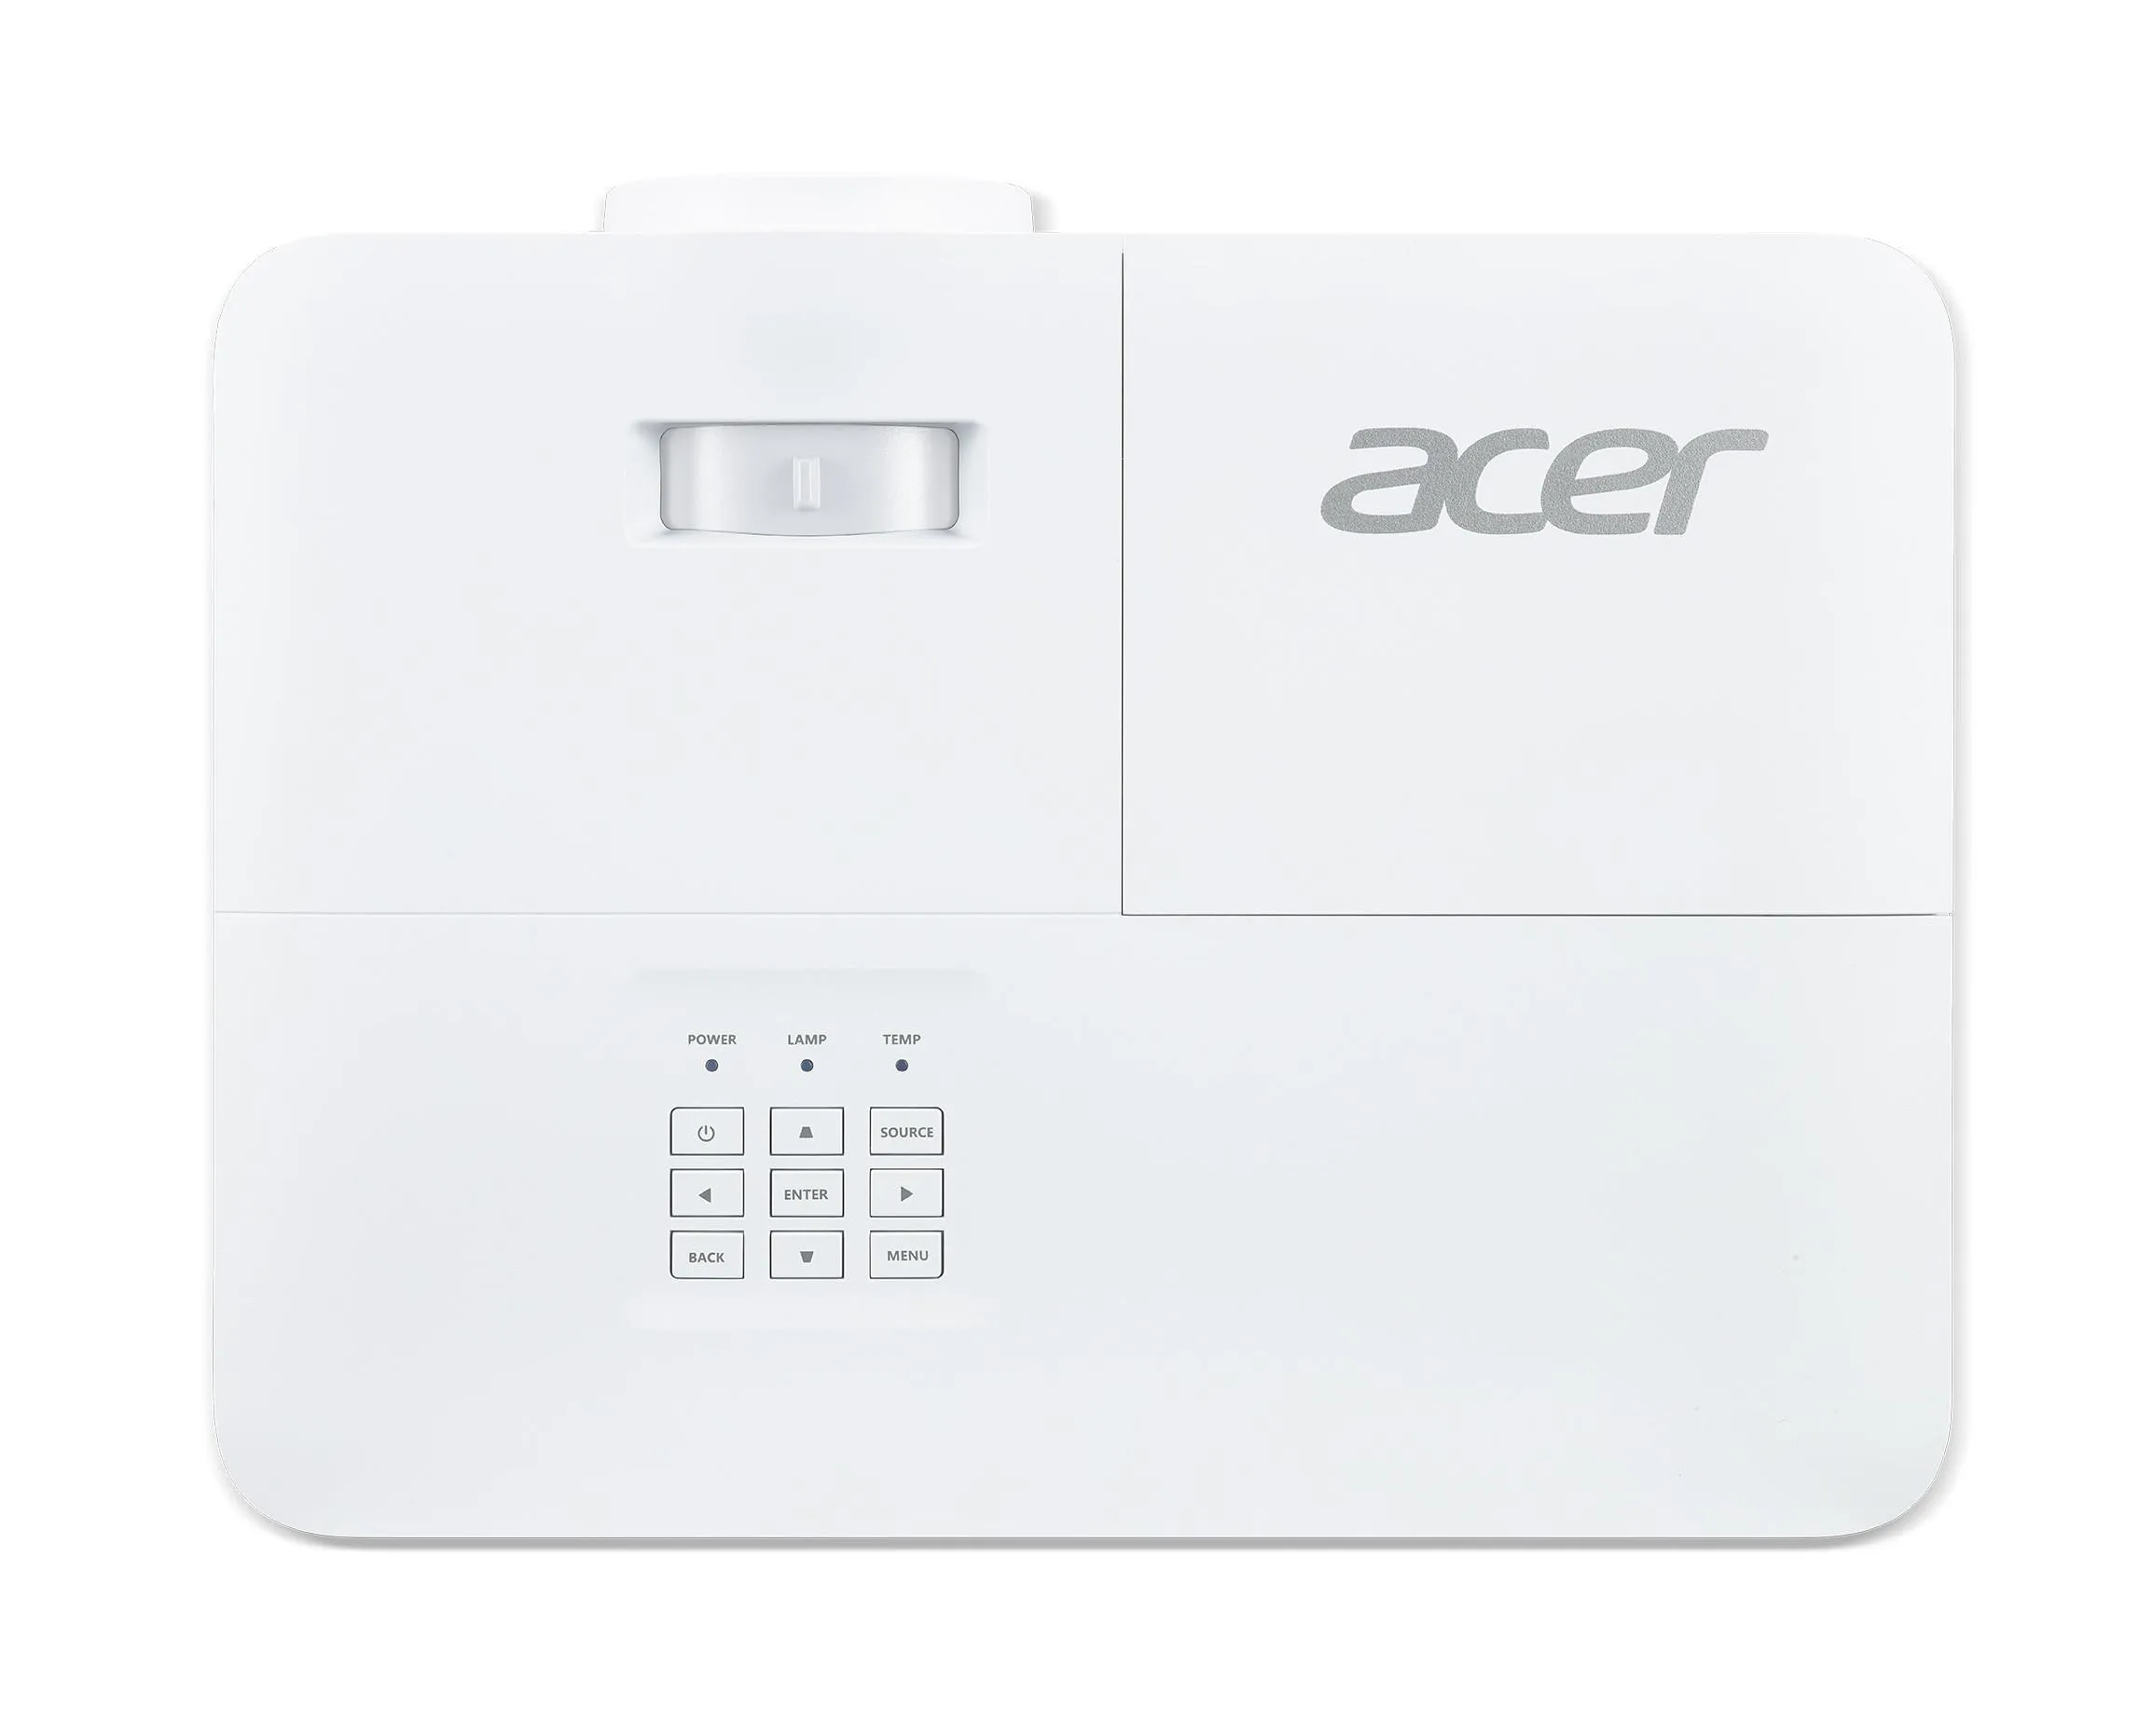 Vente Acer Business P5827a Acer au meilleur prix - visuel 6